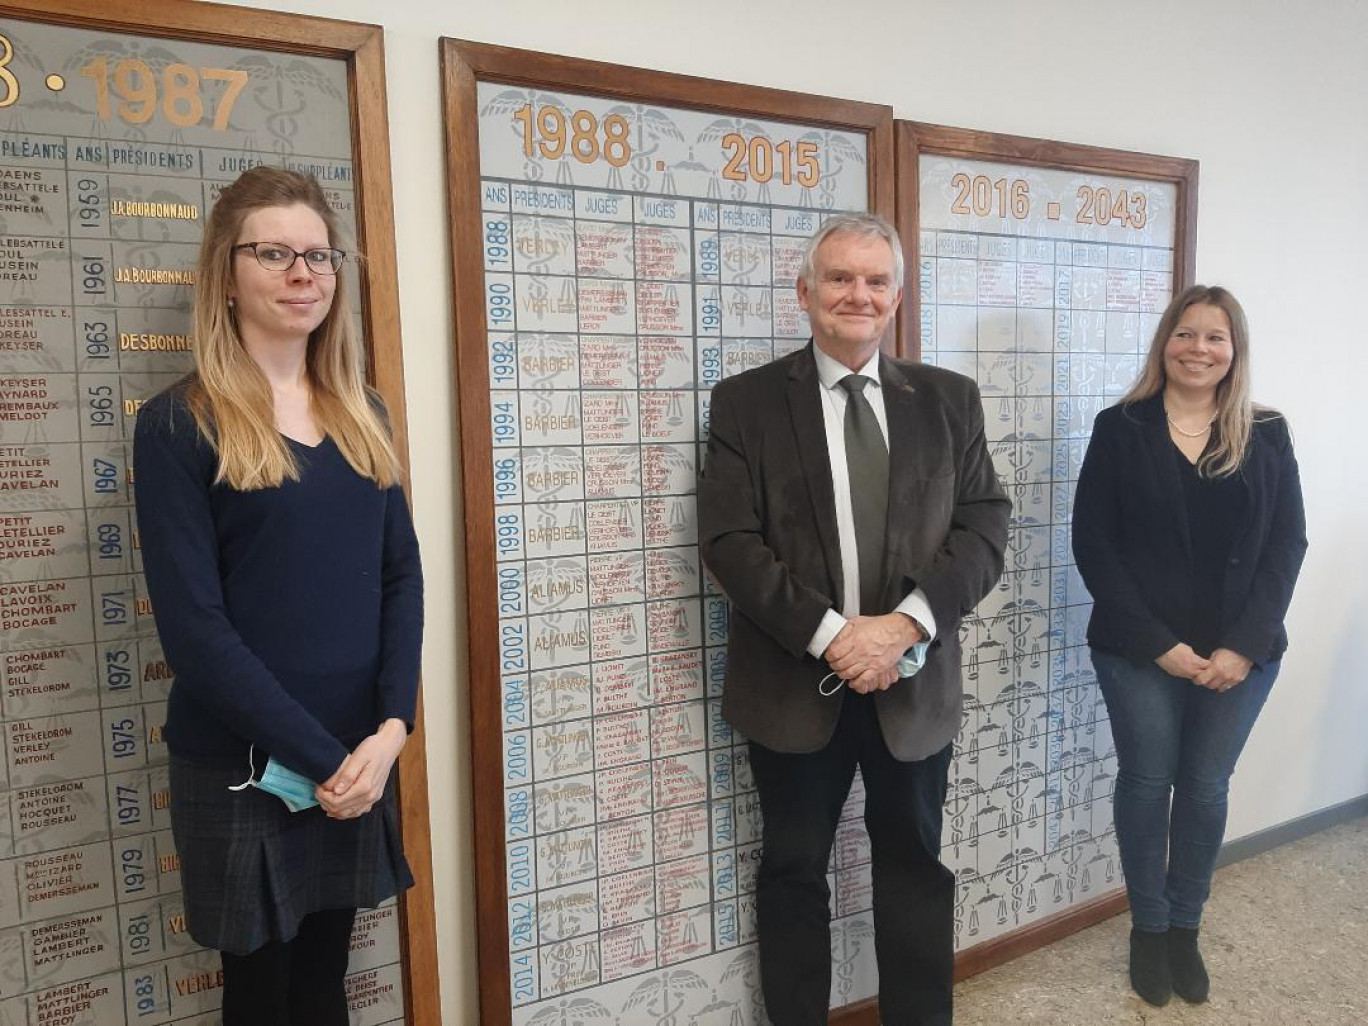 Christian Lavallée, président du tribunal de commerce, dans son bureau, accompagné de Me Lucile Pouwels (à gauche) et Me Julie Pouwels, qui ont pris la suite de leurs parents au greffe du tribunal de Dunkerque en 2020.